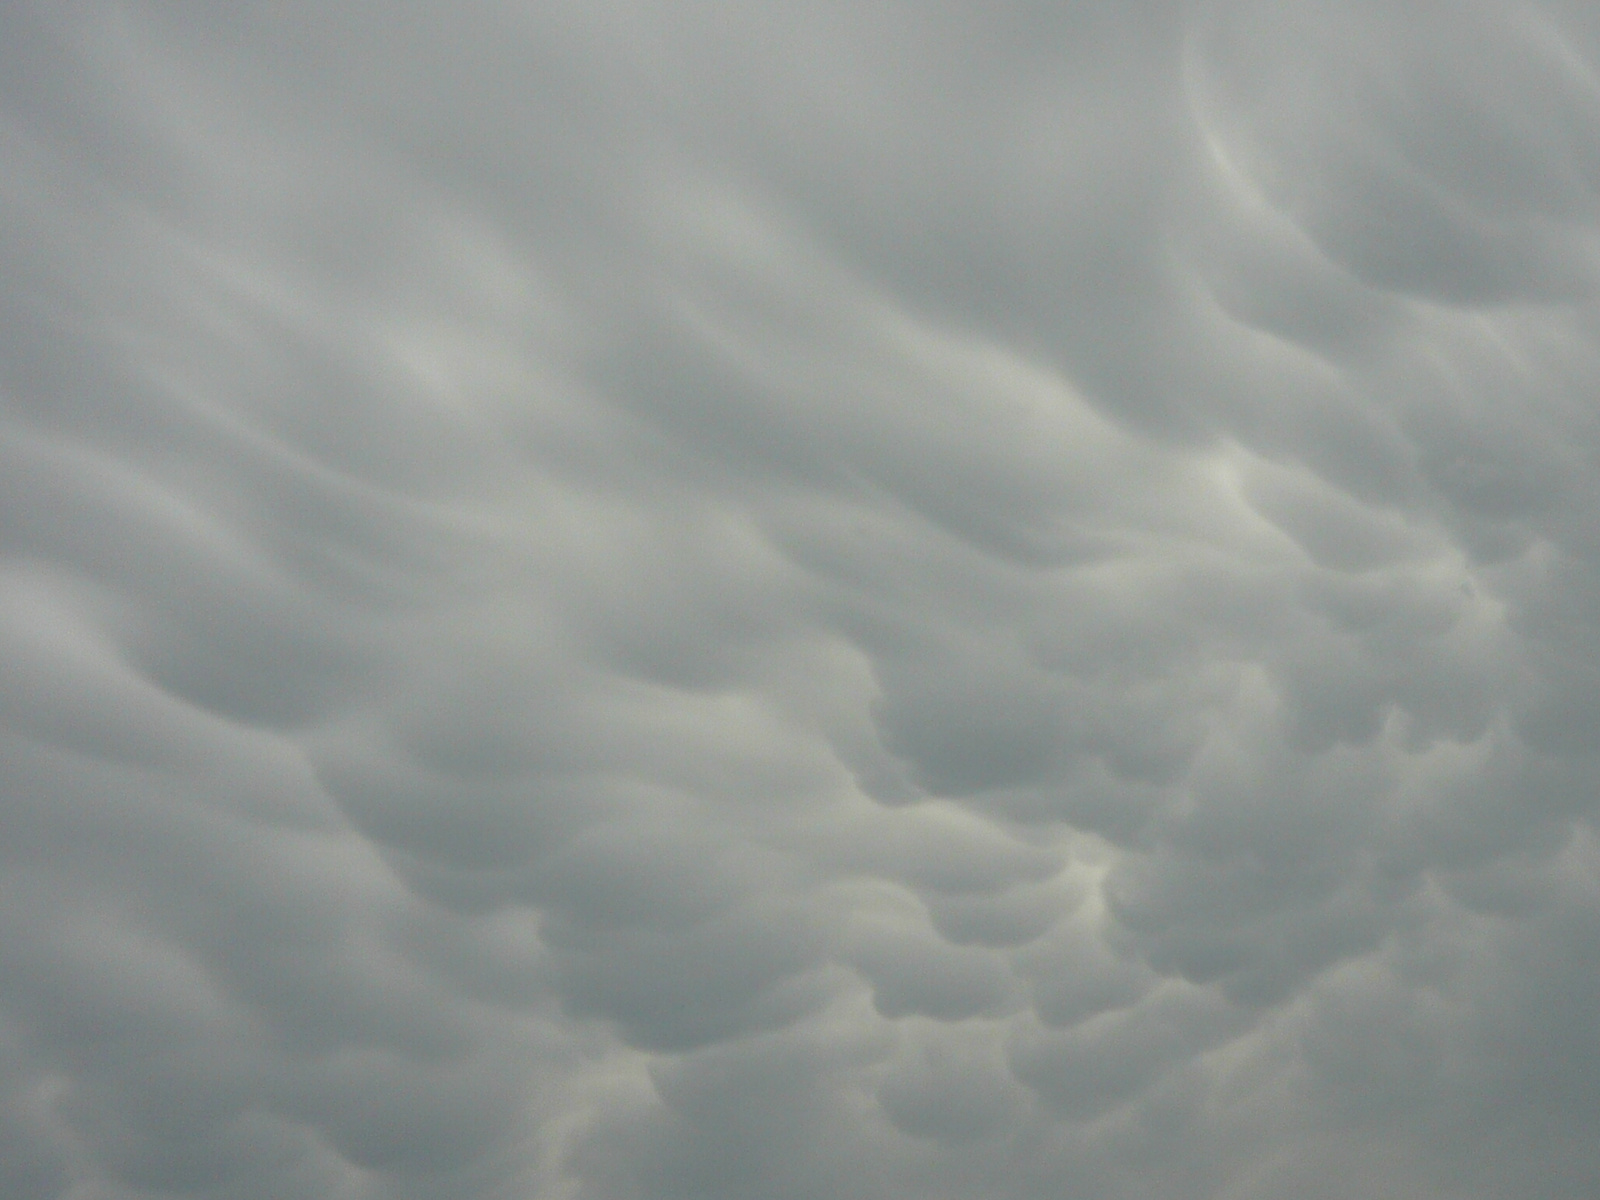 Mammatus felhők.2012 június